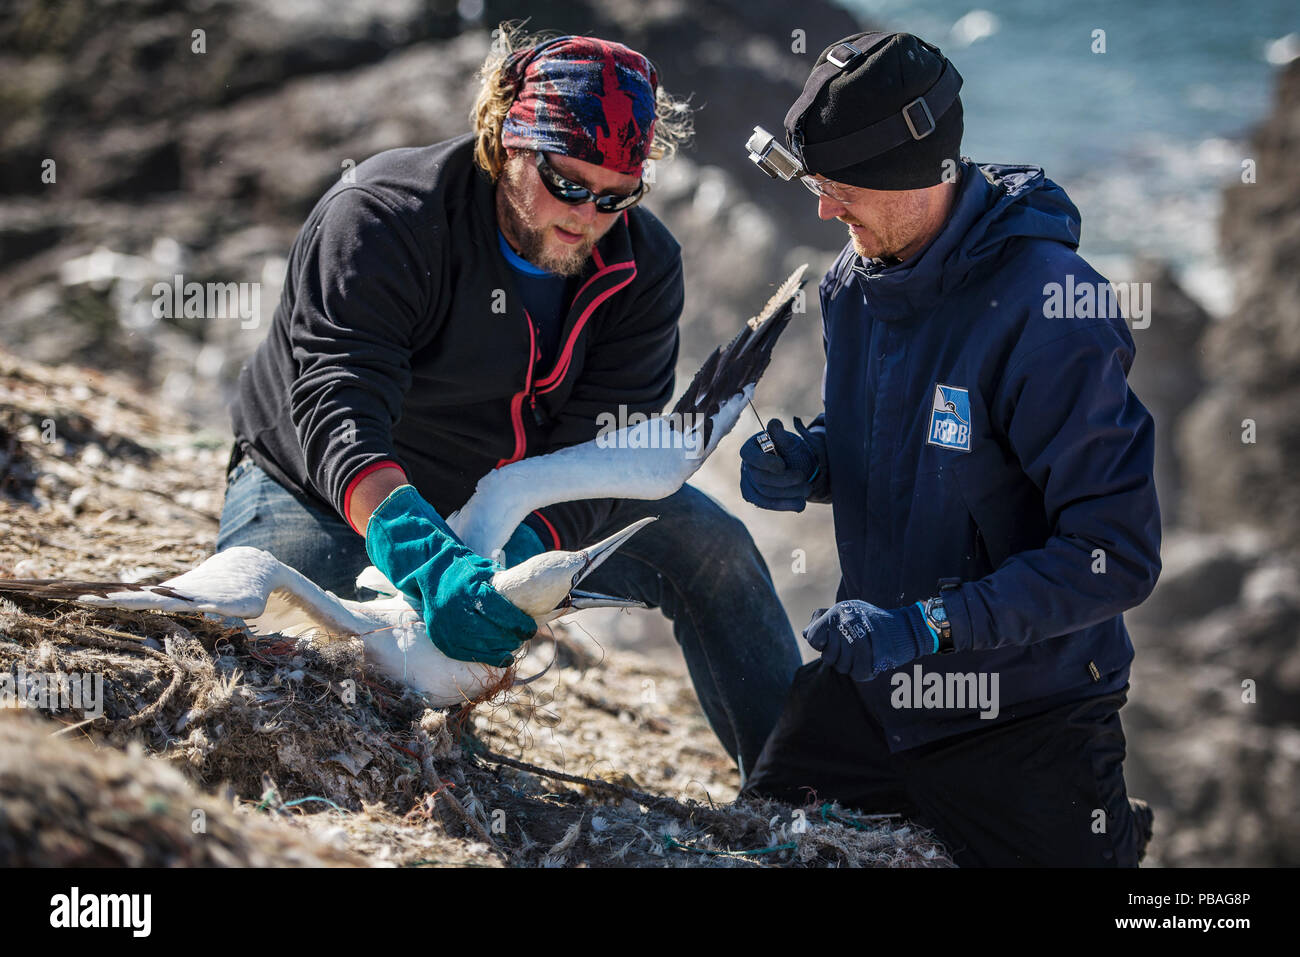 Libérer les scientifiques de Bassan (Morus bassanus) empêtré dans les déchets marins. Grassholm Island, au Pays de Galles, Royaume-Uni. Octobre 2015. Banque D'Images